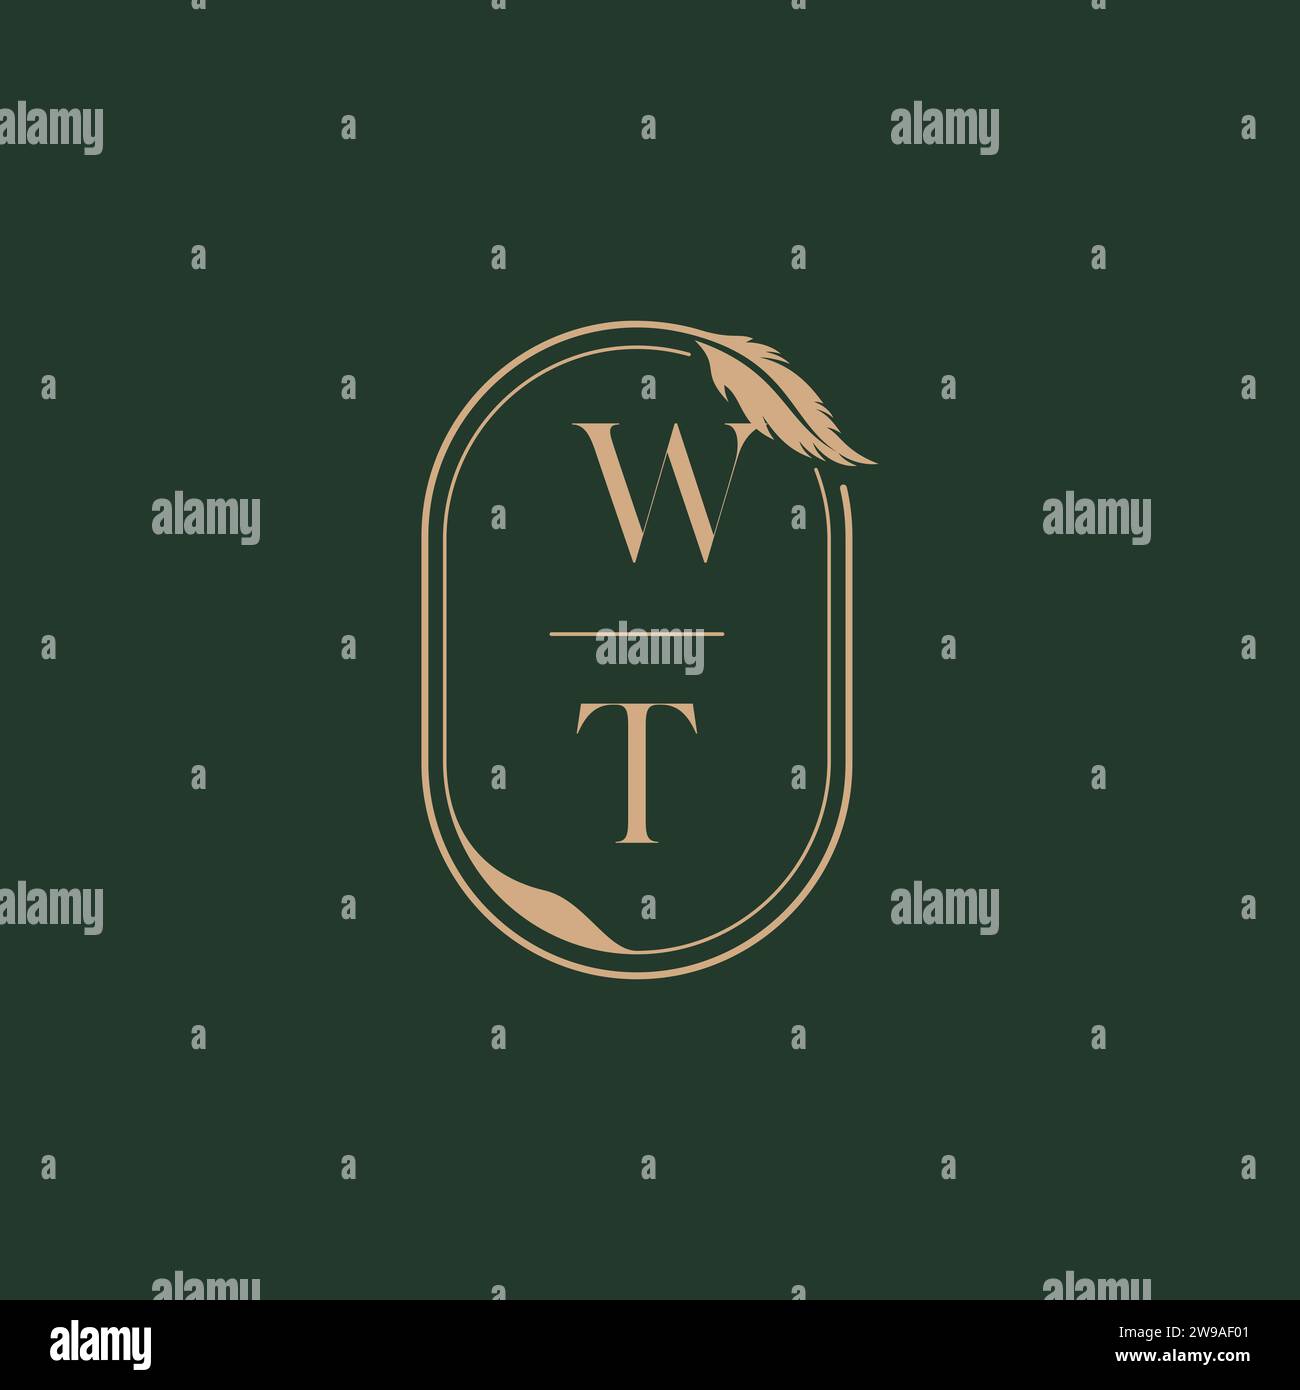 WT feather concept wedding monogram logo design ideas as inspiration Stock Vector